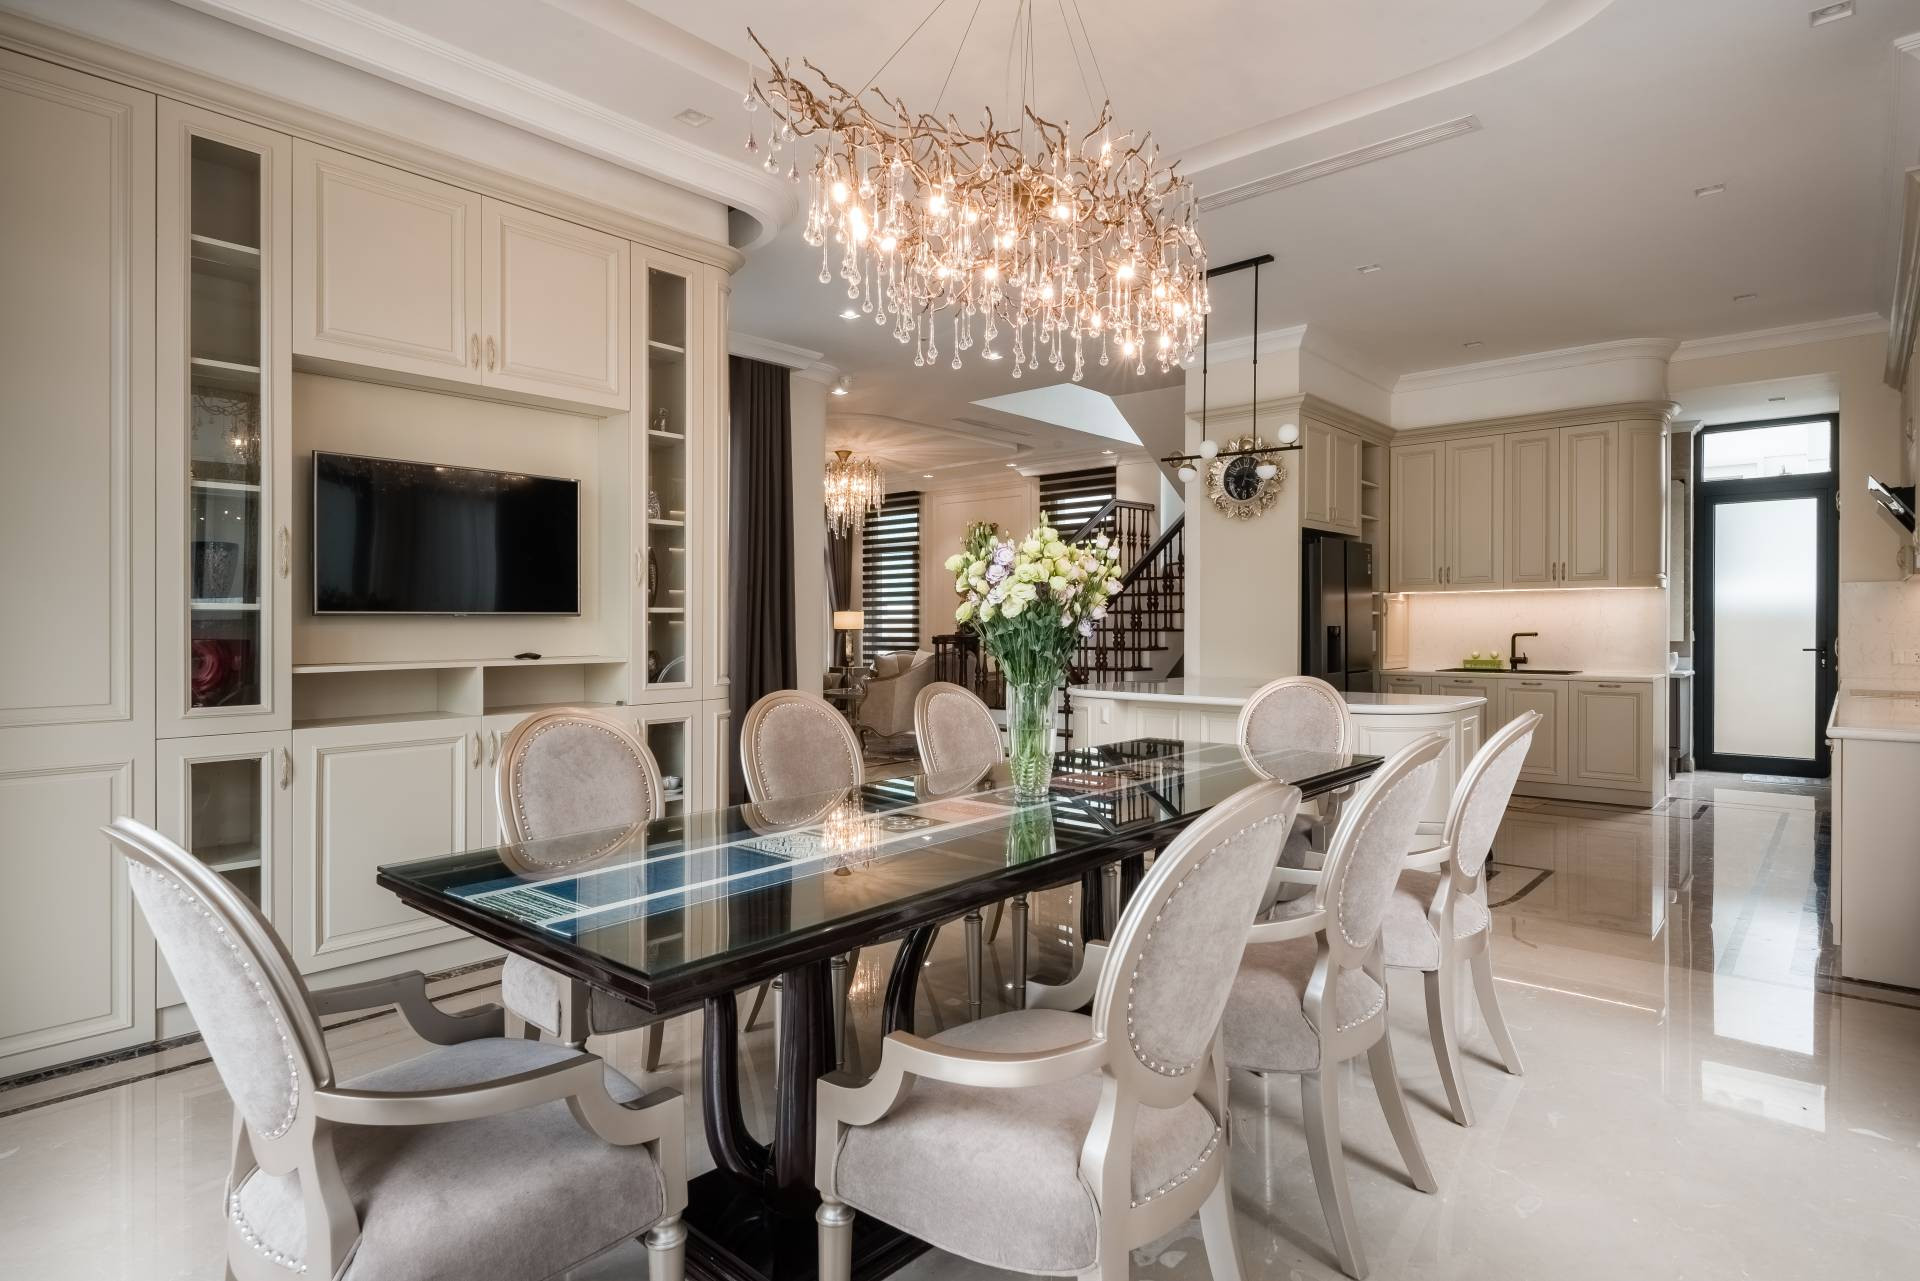 Không gian bếp được trang bị đầy đủ tiện nghi sang trọng, bộ bàn ghế ăn được thiết kế đồng bộ với màu be nhẹ nhàng cùng khung sơn nhũ bạc sang trọng.